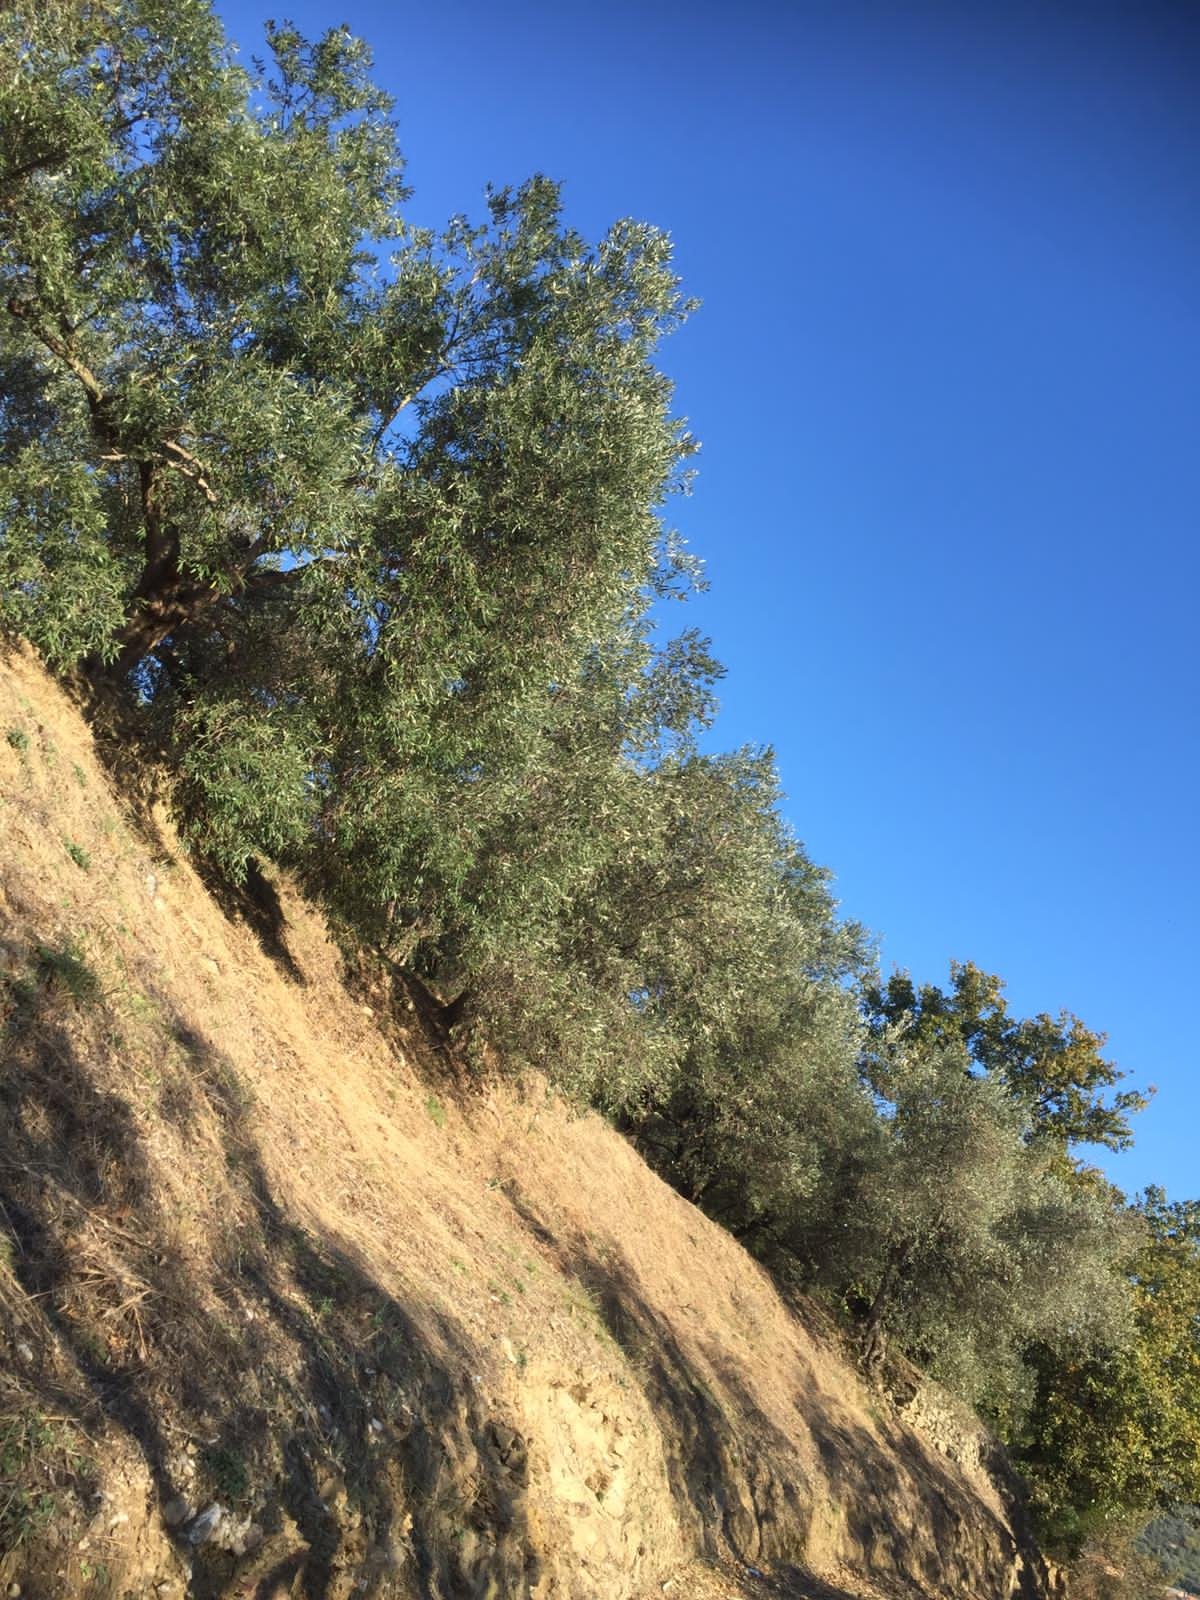 Quasi pronti alla raccolta delle olive, anche in alta quota